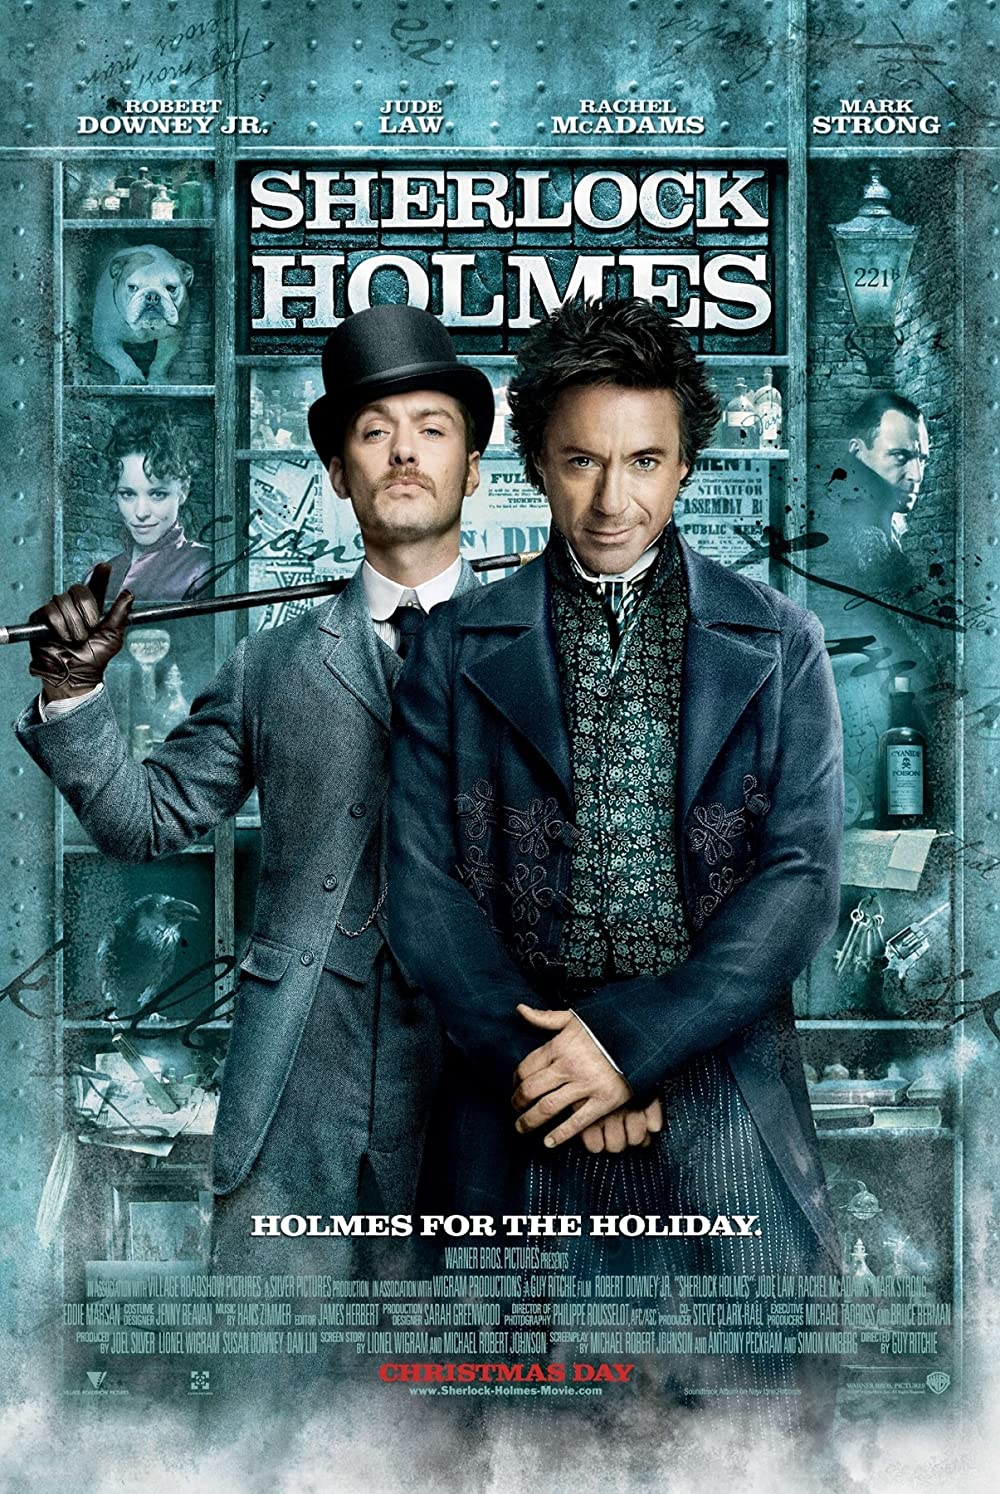 Filmbeschreibung zu Sherlock Holmes